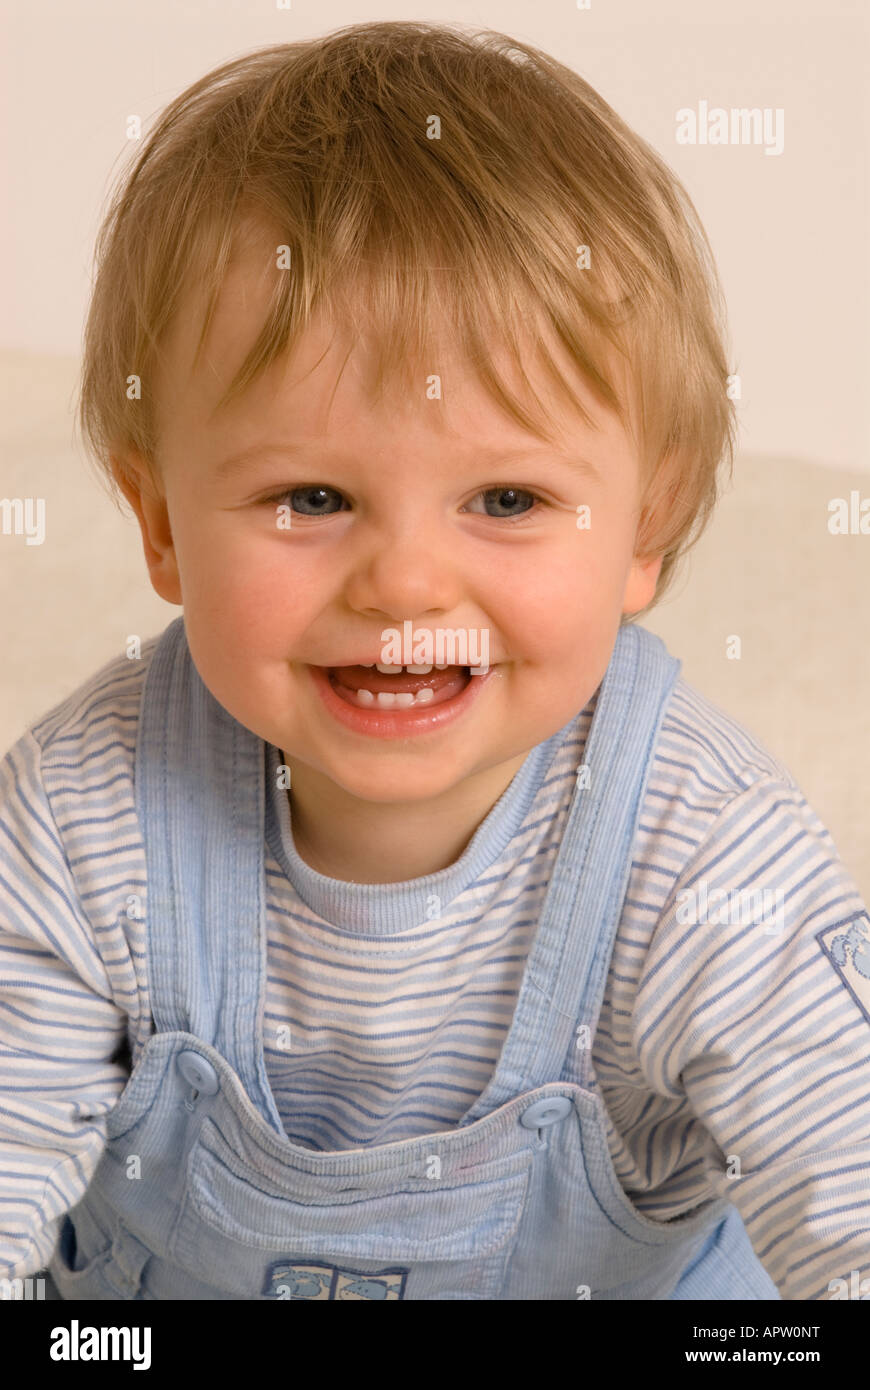 Bébé garçon d'un an regardant la caméra rire souriant bouche heureuse ouverte habillée de T-shirt bleu et salopette, dents de bébé Banque D'Images